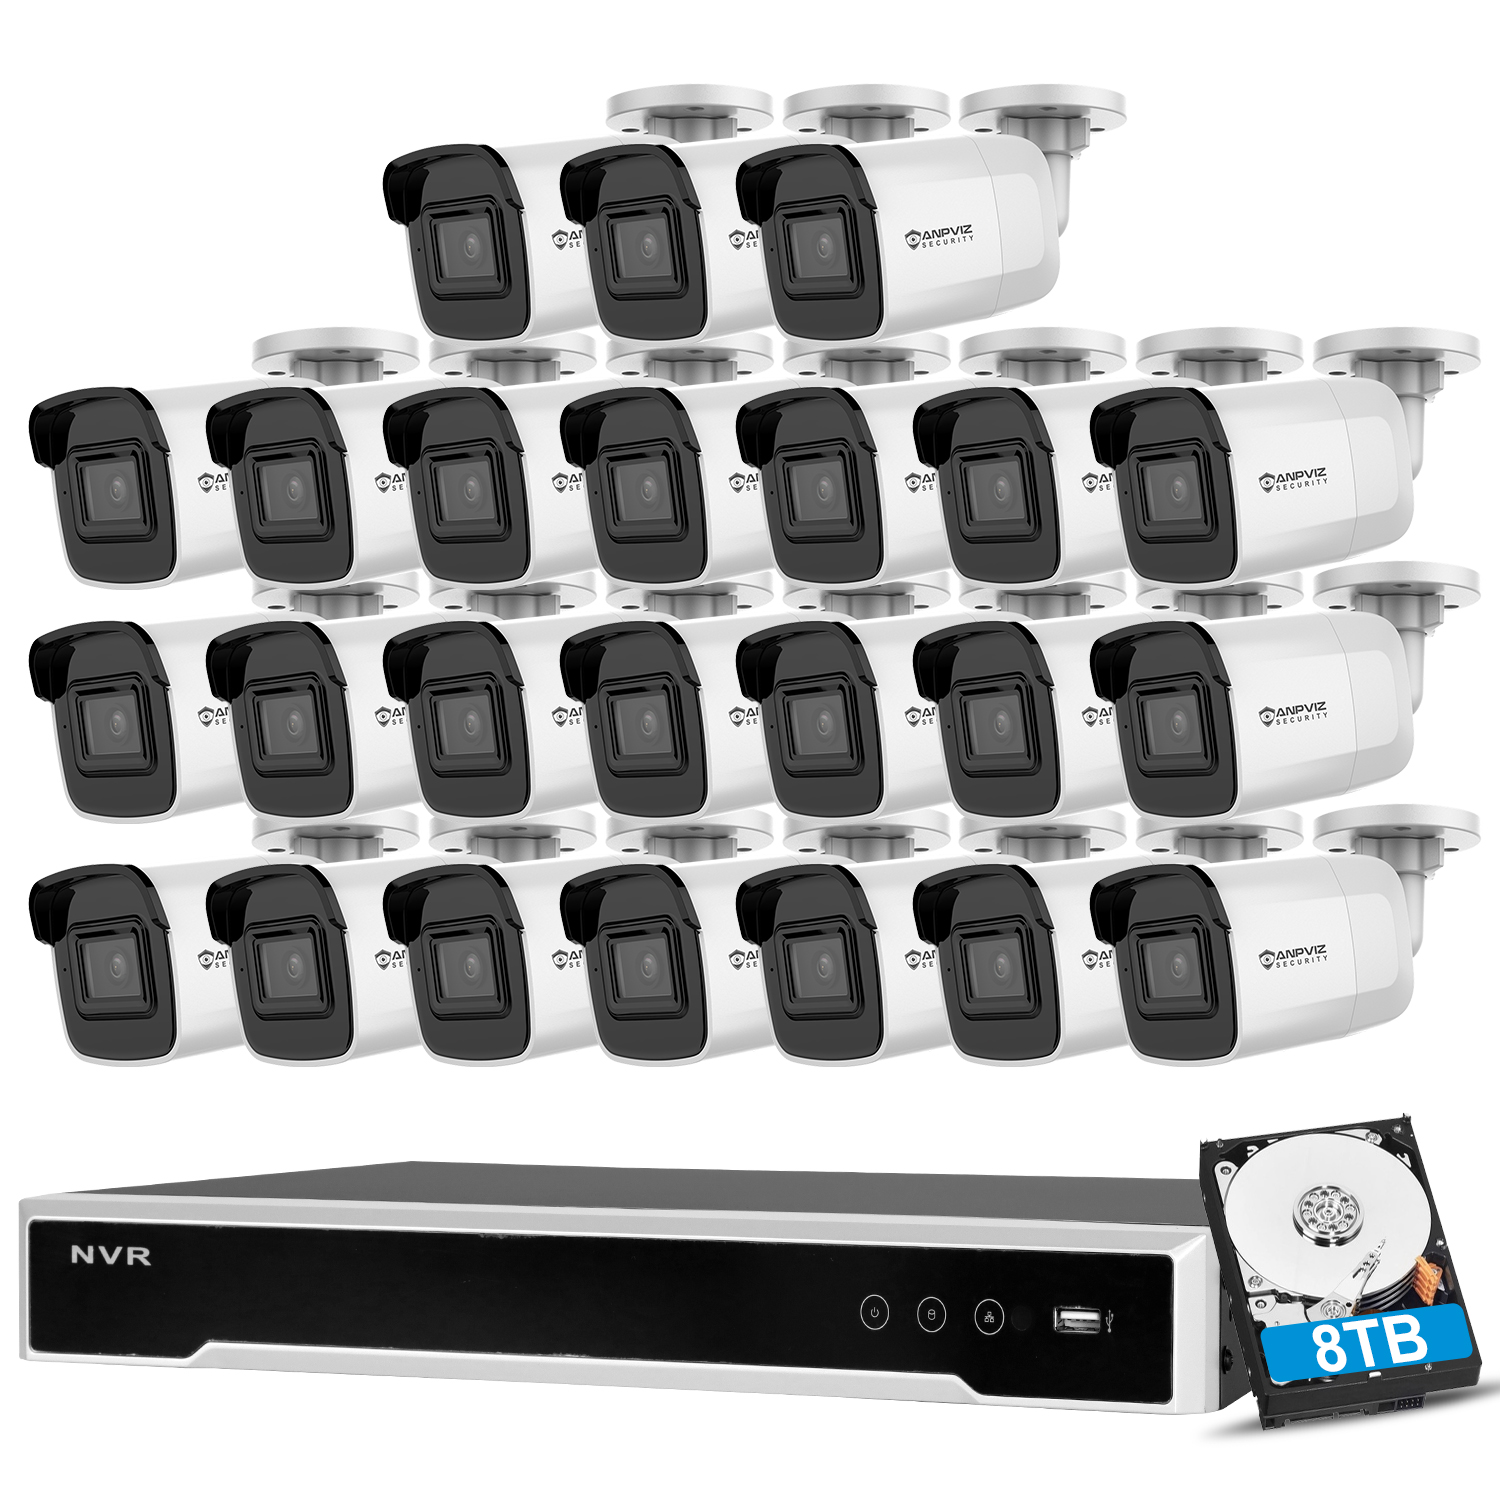 Anpviz Cámara IP POE de 5MP Cámara de bala CCTV de audio